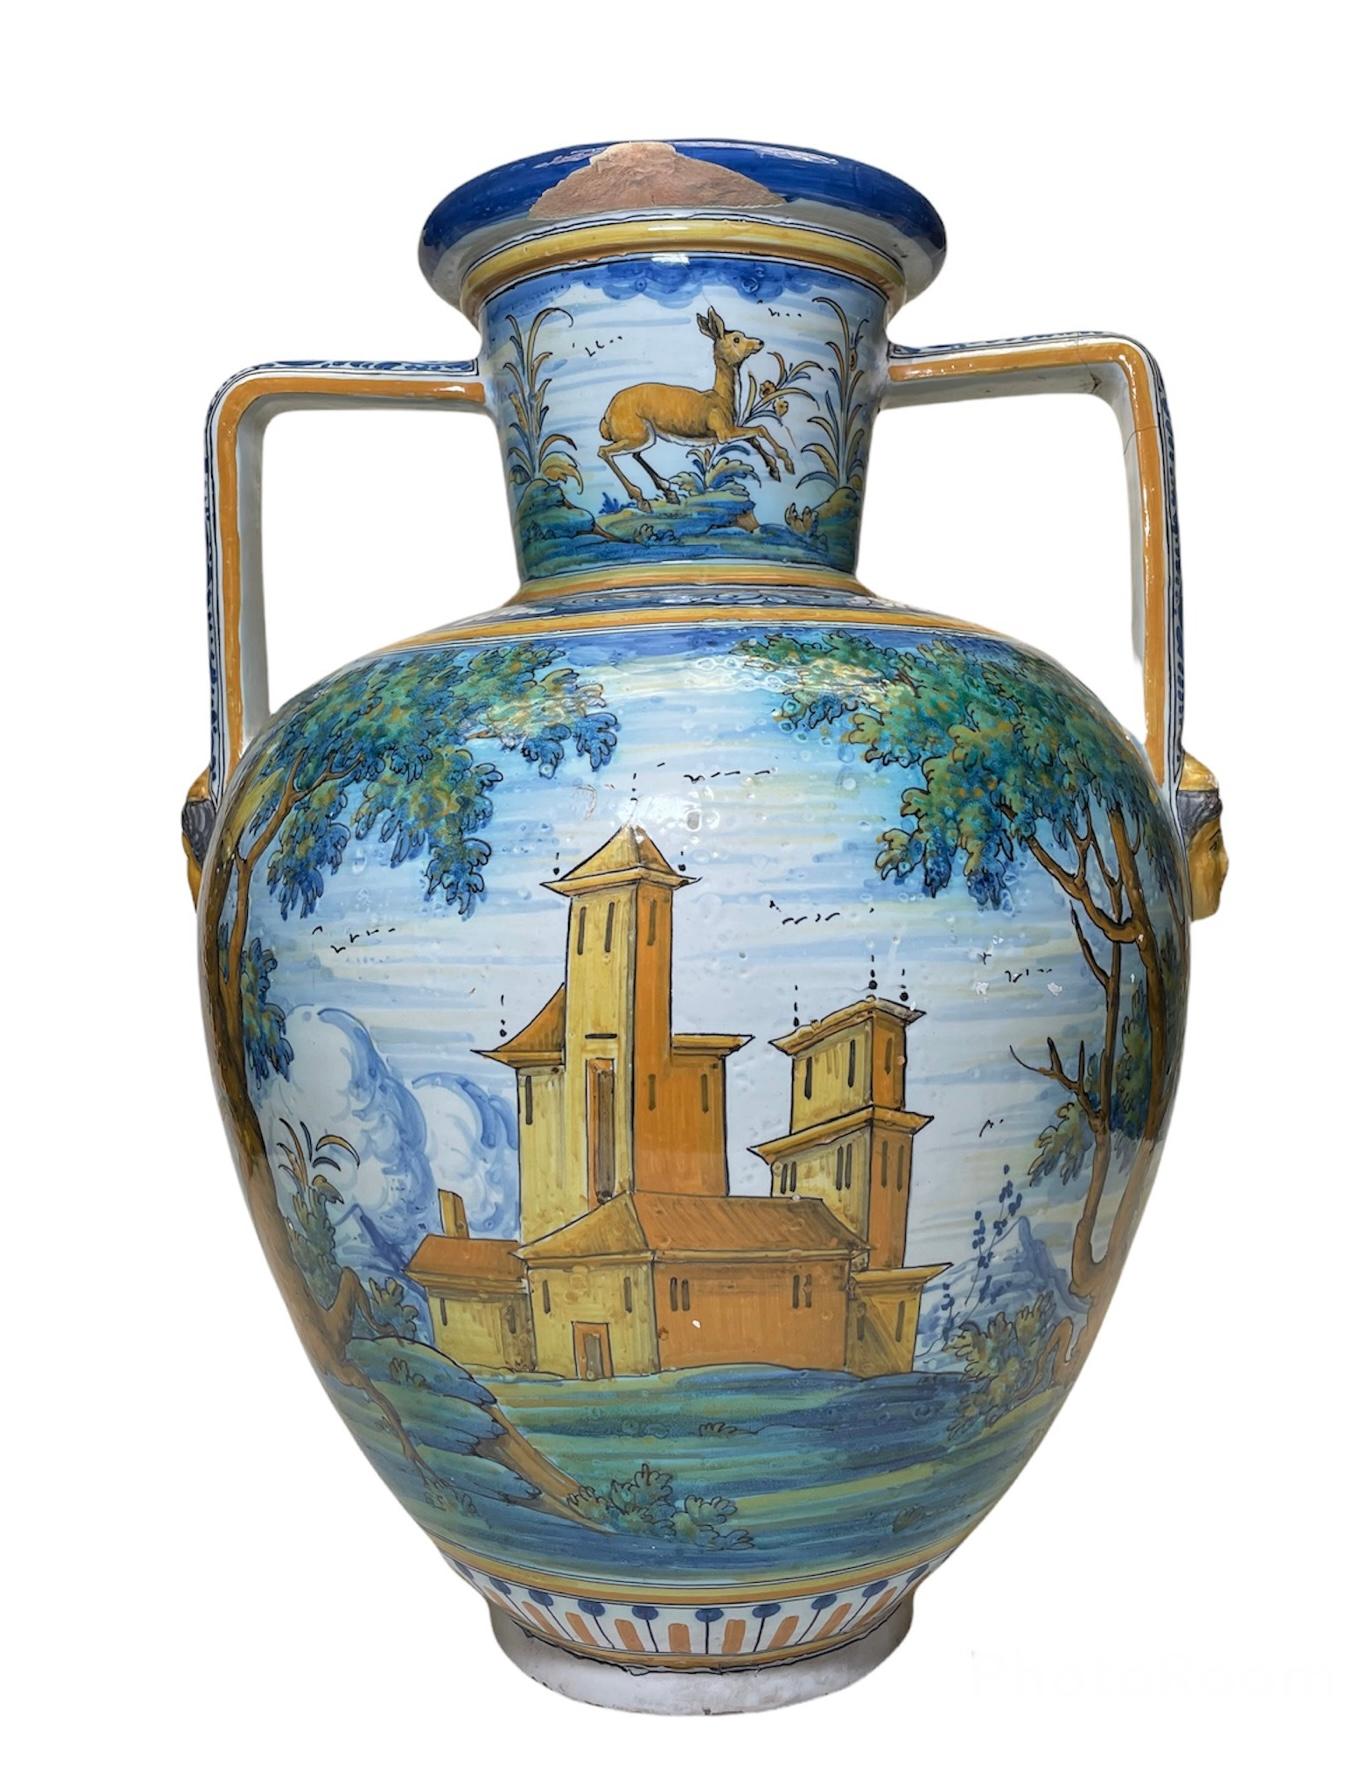 Dies ist eine Talavera Majolika große Amphora / Urne Vase. Es ist handgemalt in den Bauch mit einer Szene von einem Land Hintergrund mit einem Musketier reitet ein Pferd in der einen Seite und ein Land Kirche oder Kloster in der anderen Seite. Der